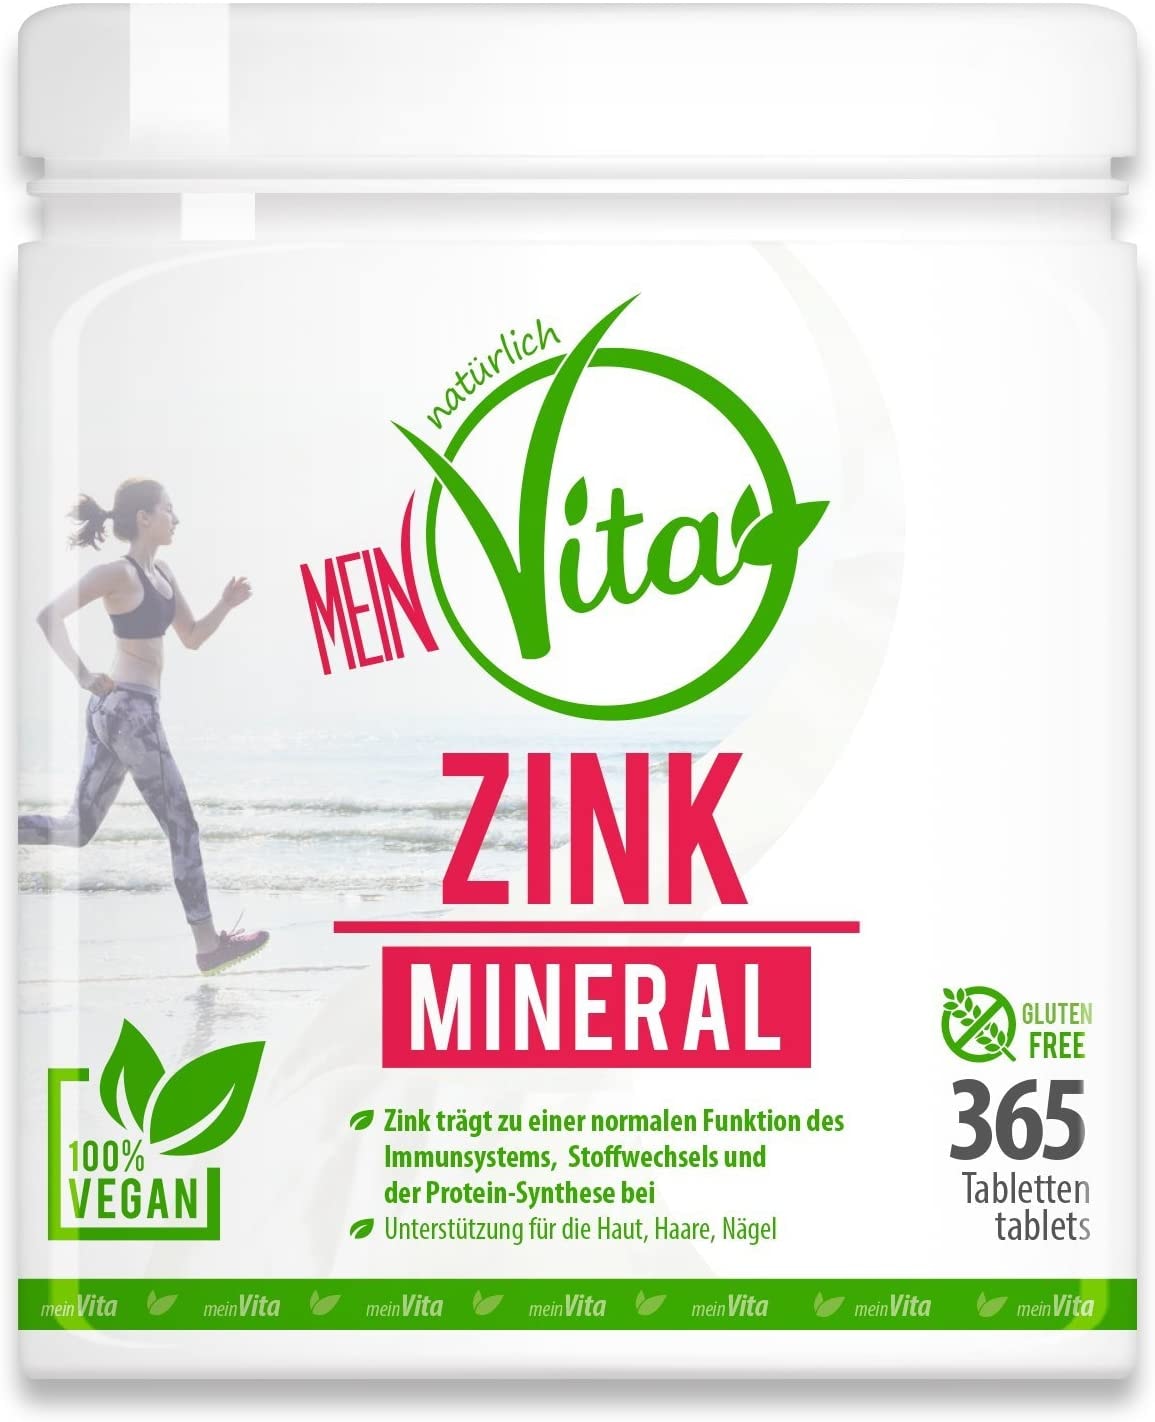 MeinVita Zink Mineral - 25 mg (Tagesportion) - hochdosiert - 100 % vegane Tabletten, 365 Stück (Jahresdepot) (365 g)